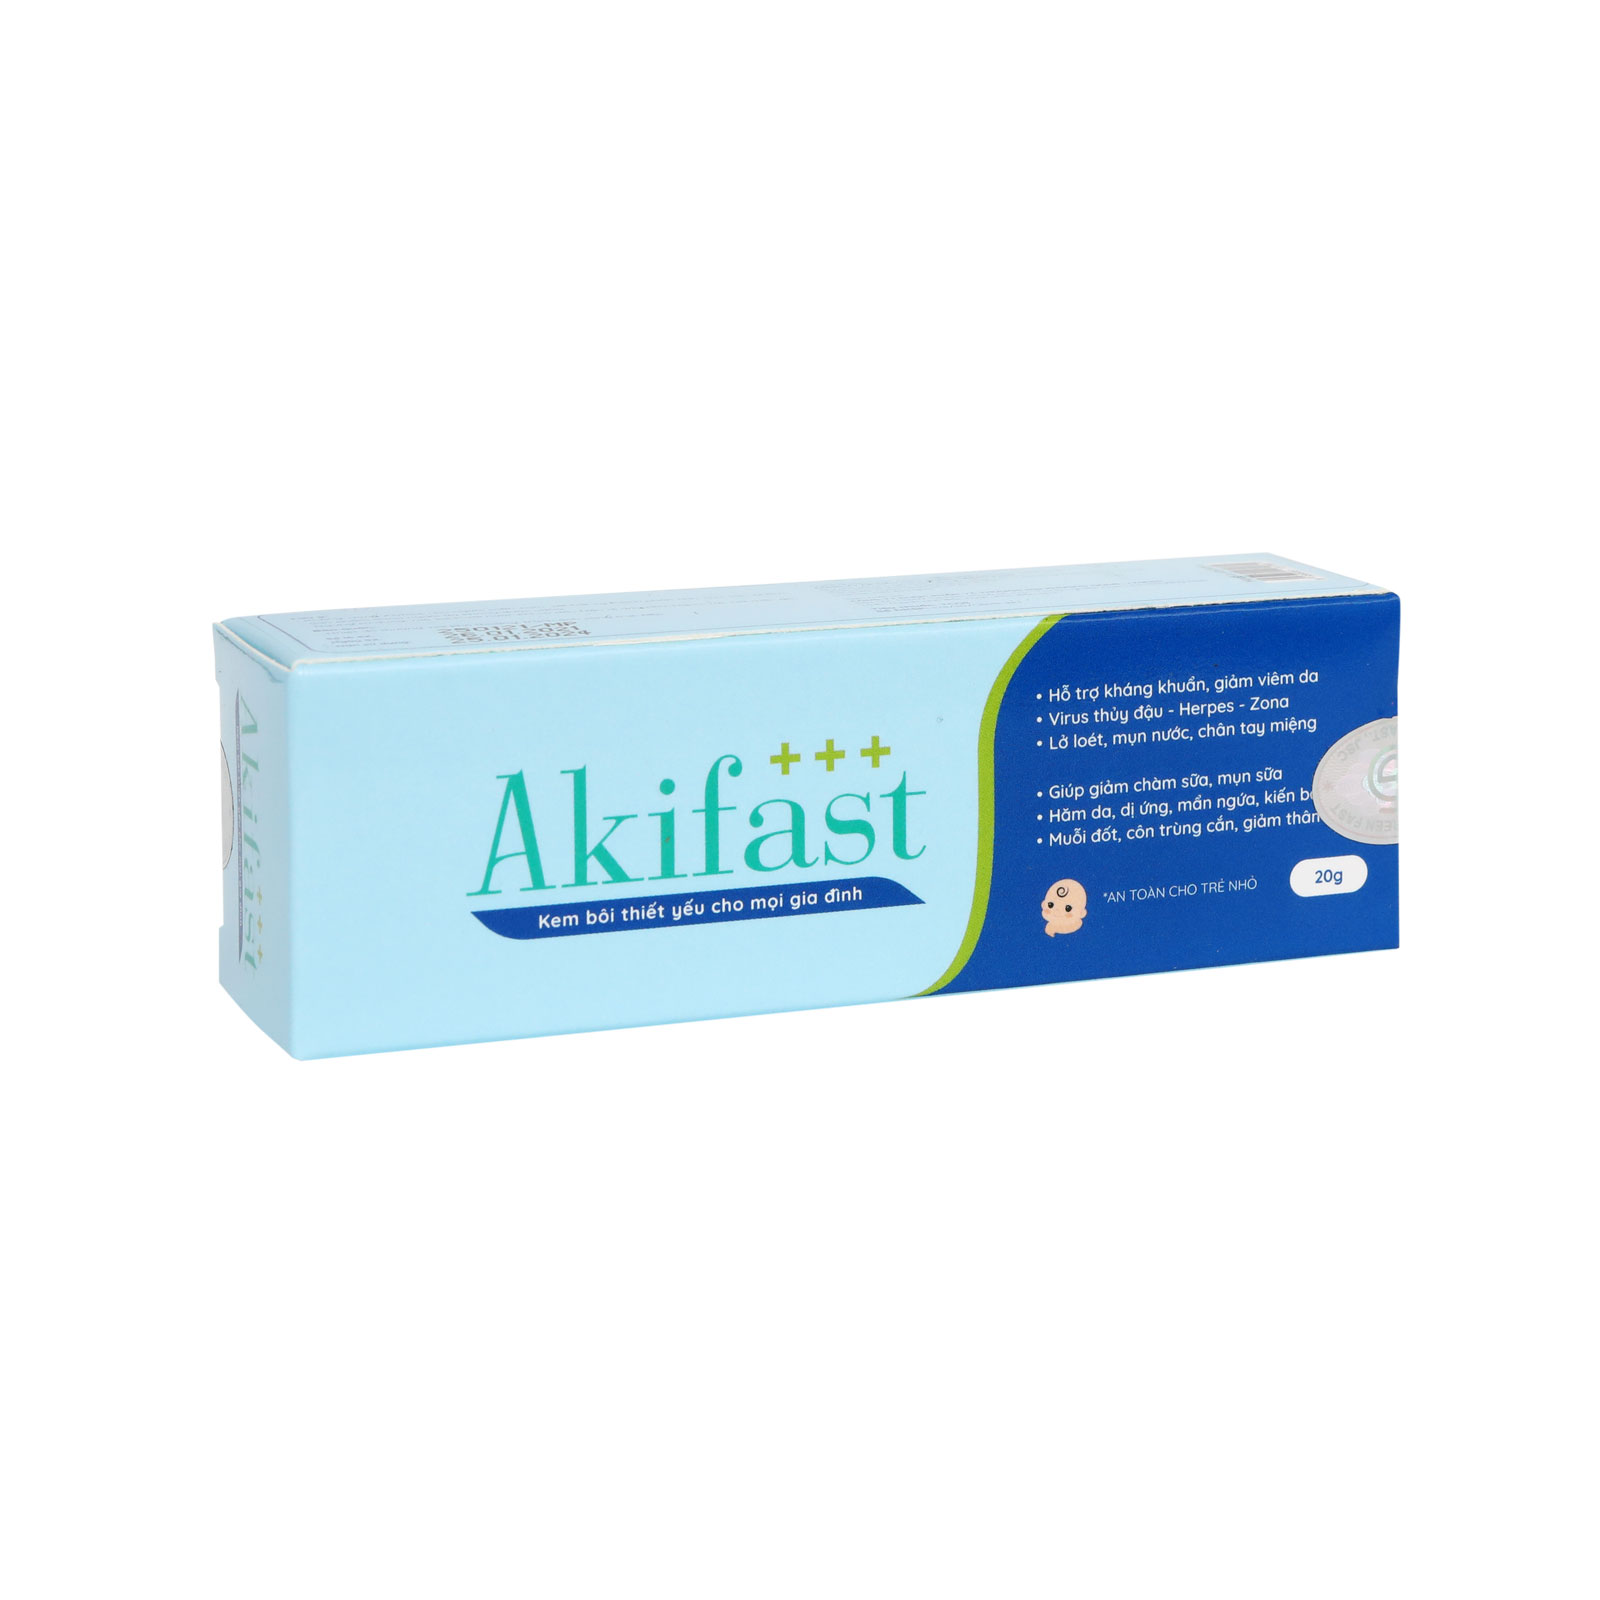 Kem bôi hỗ trợ trị mụn Akifast – Hỗ trợ kháng khuẩn, giảm viêm da, chăm sóc và bảo vệ vùng da hư tổn